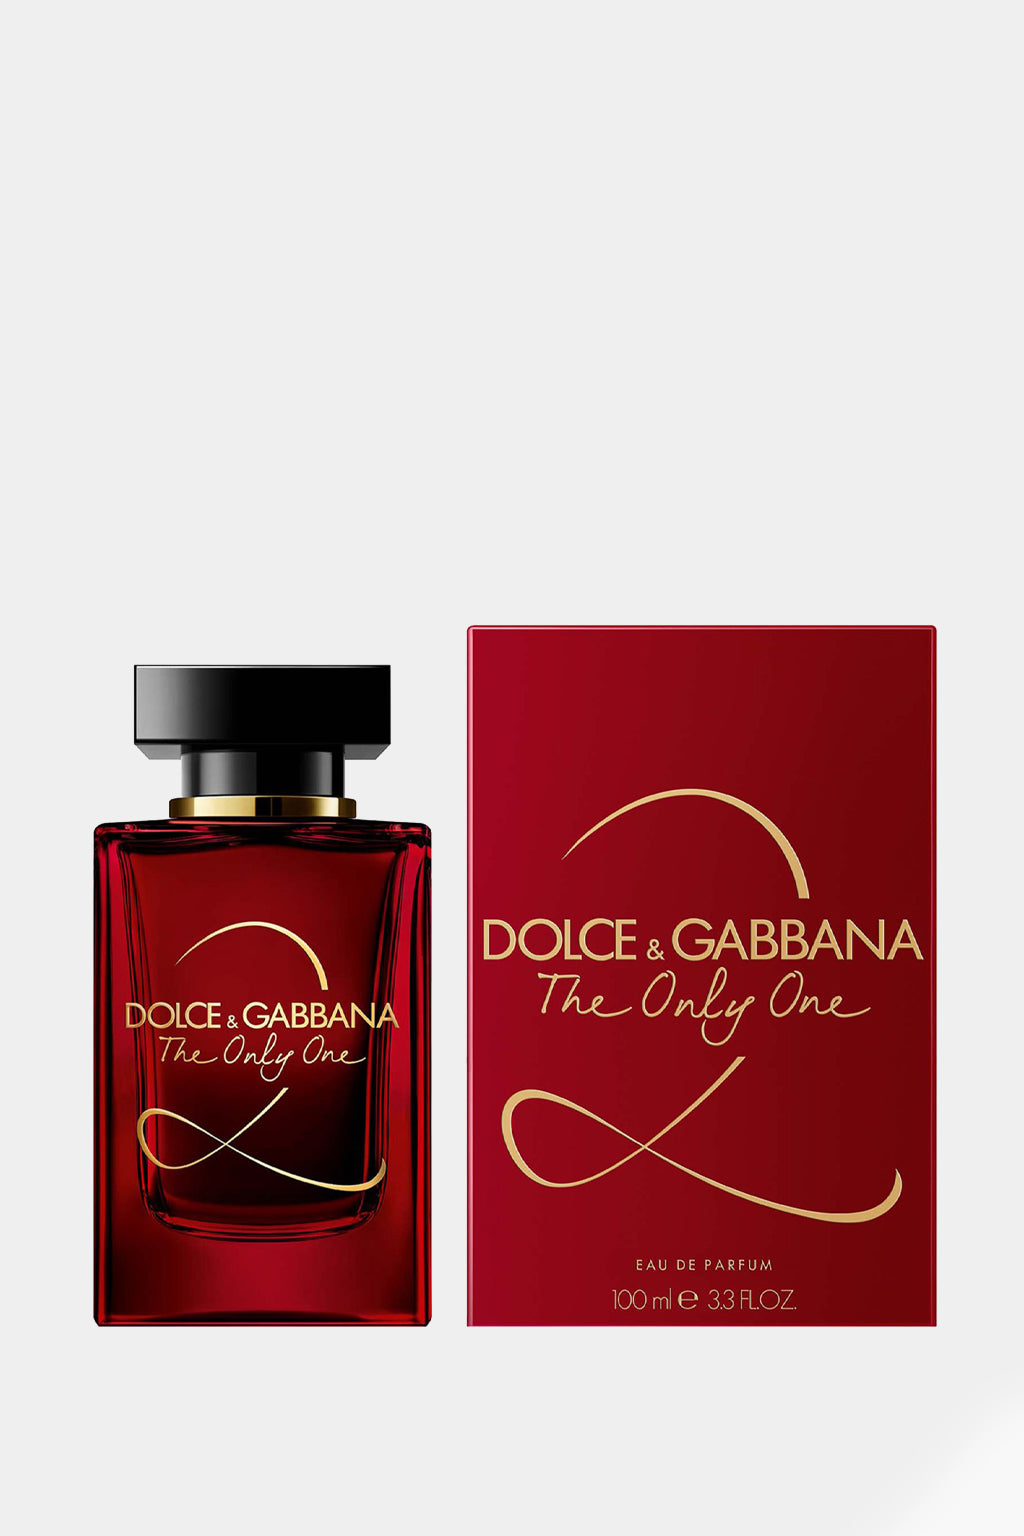 Dolce & Gabbana - The Only One 2 Eau de Parfum